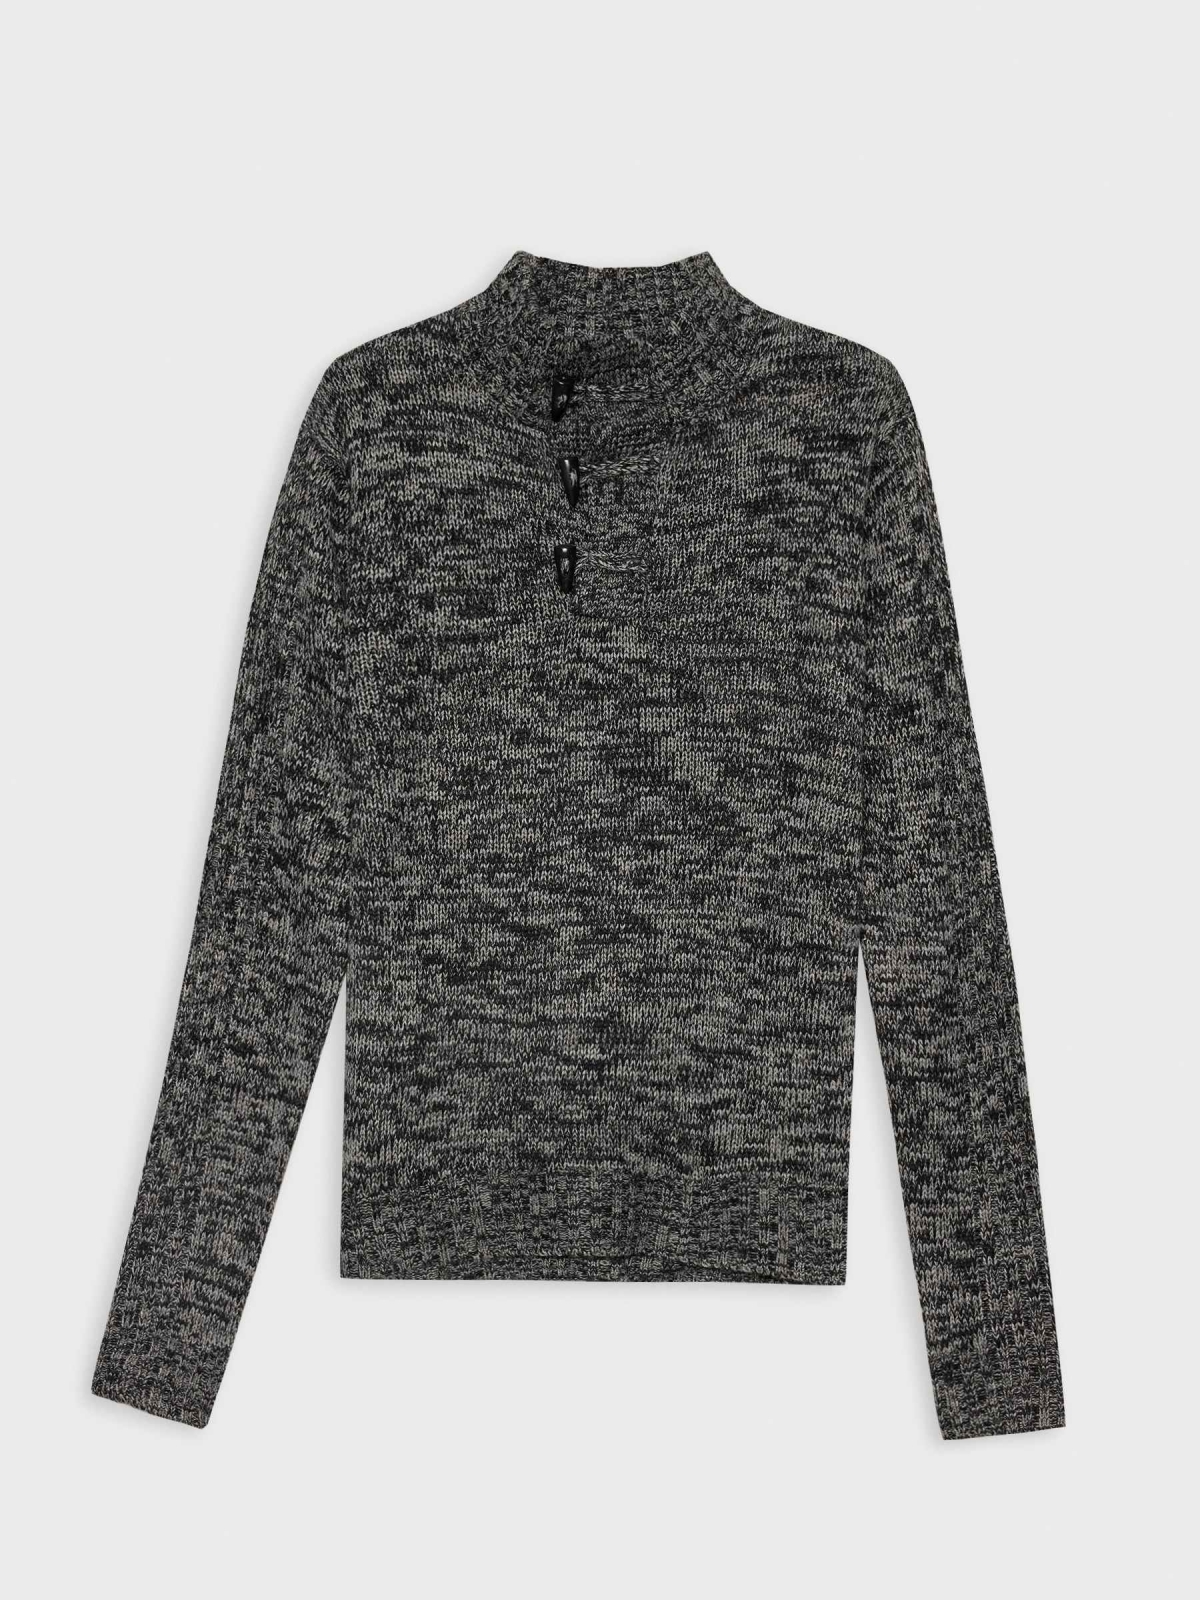  Fleece turtleneck sweater dark grey